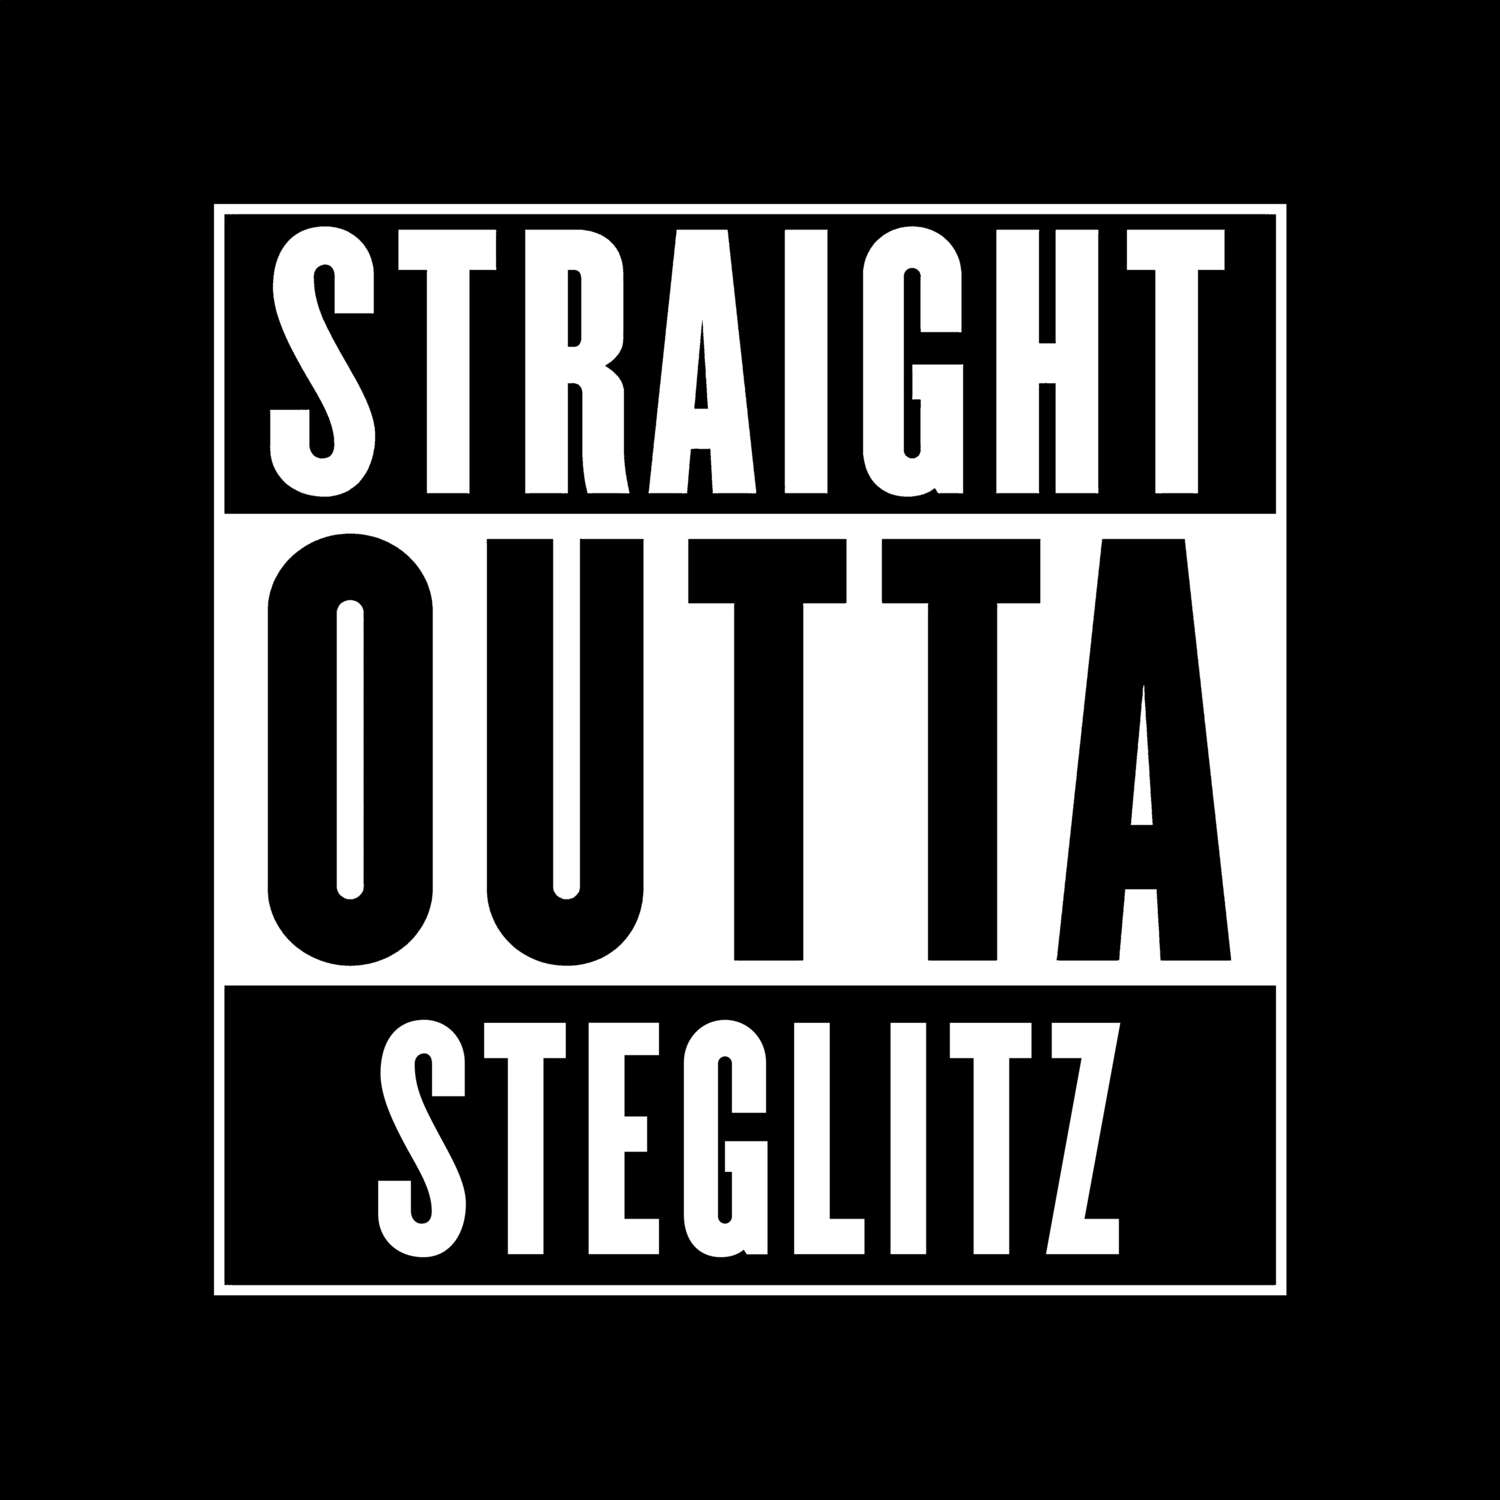 Steglitz T-Shirt »Straight Outta«